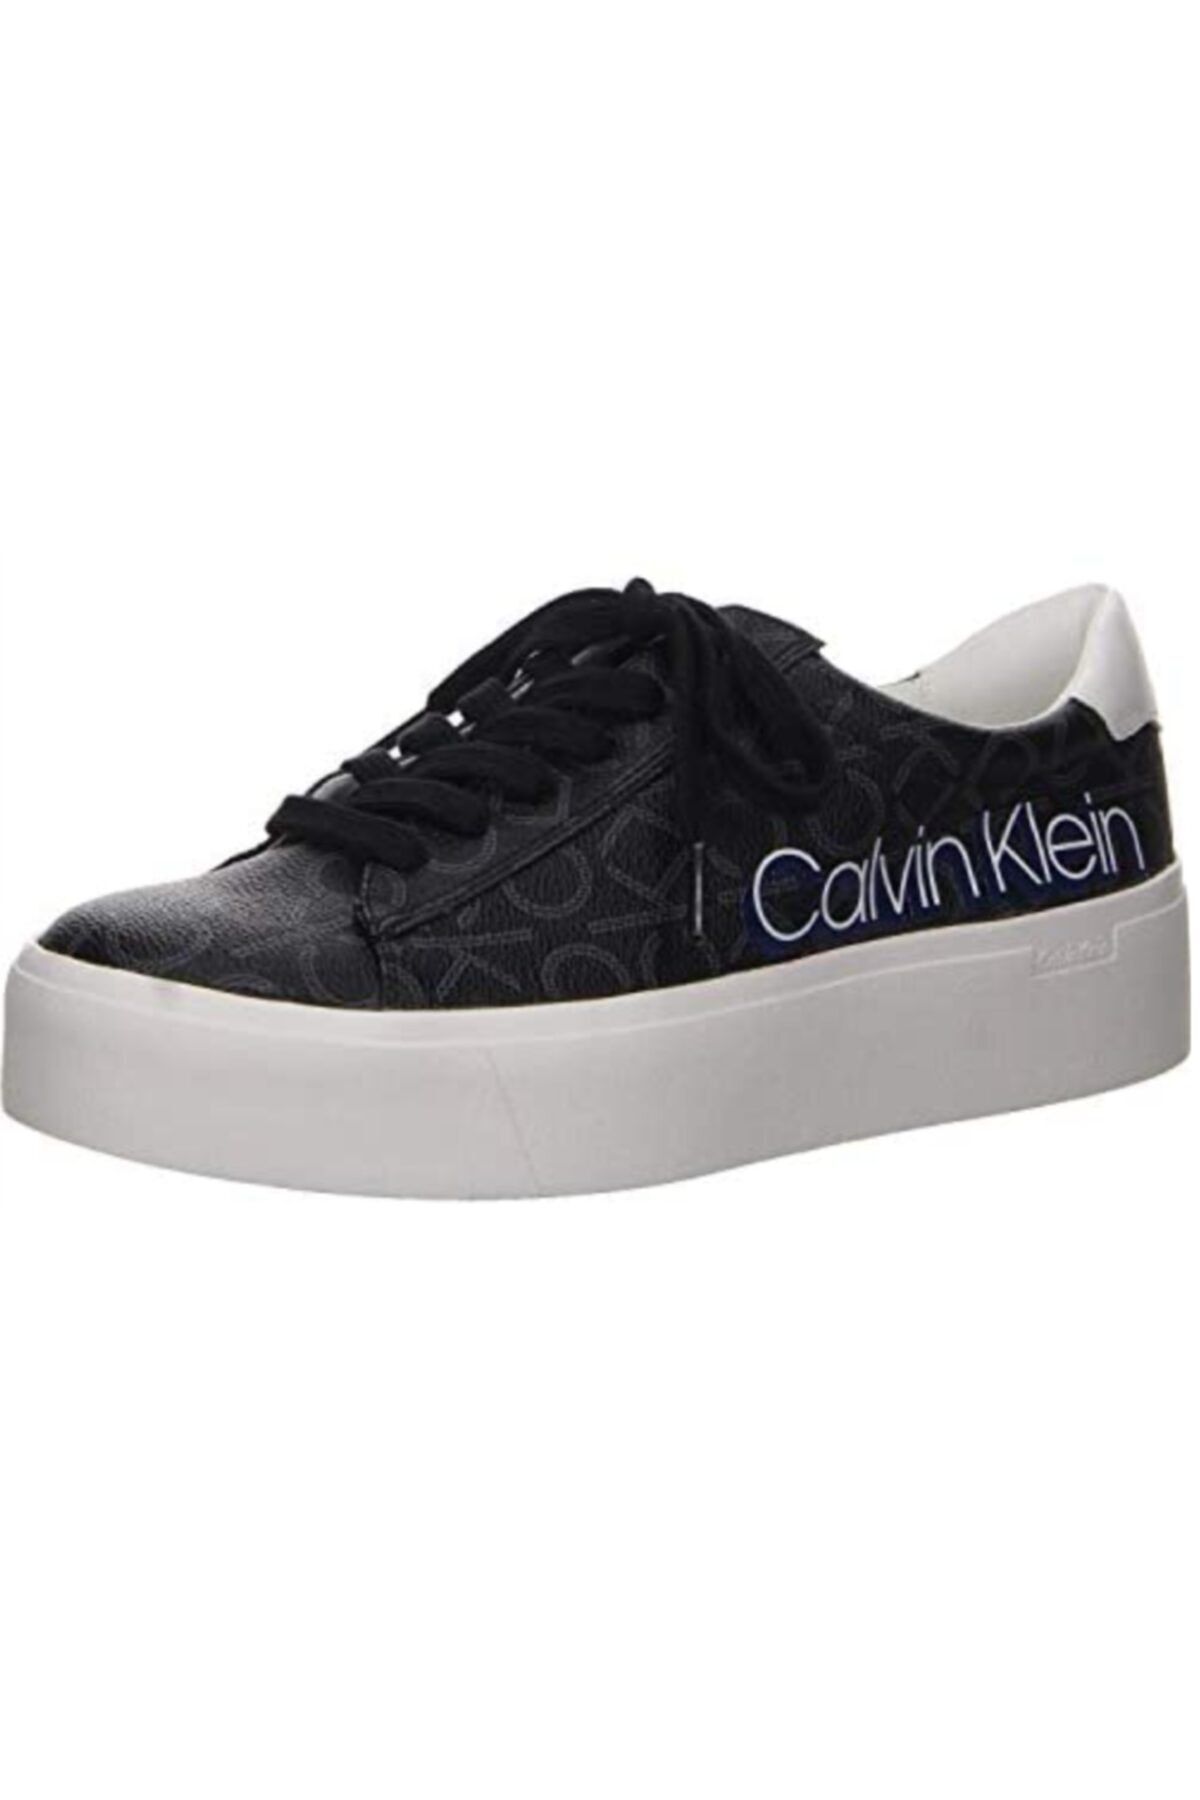 Calvin Klein Kadın Siyah Bağcıklı Spor Ayakkabı